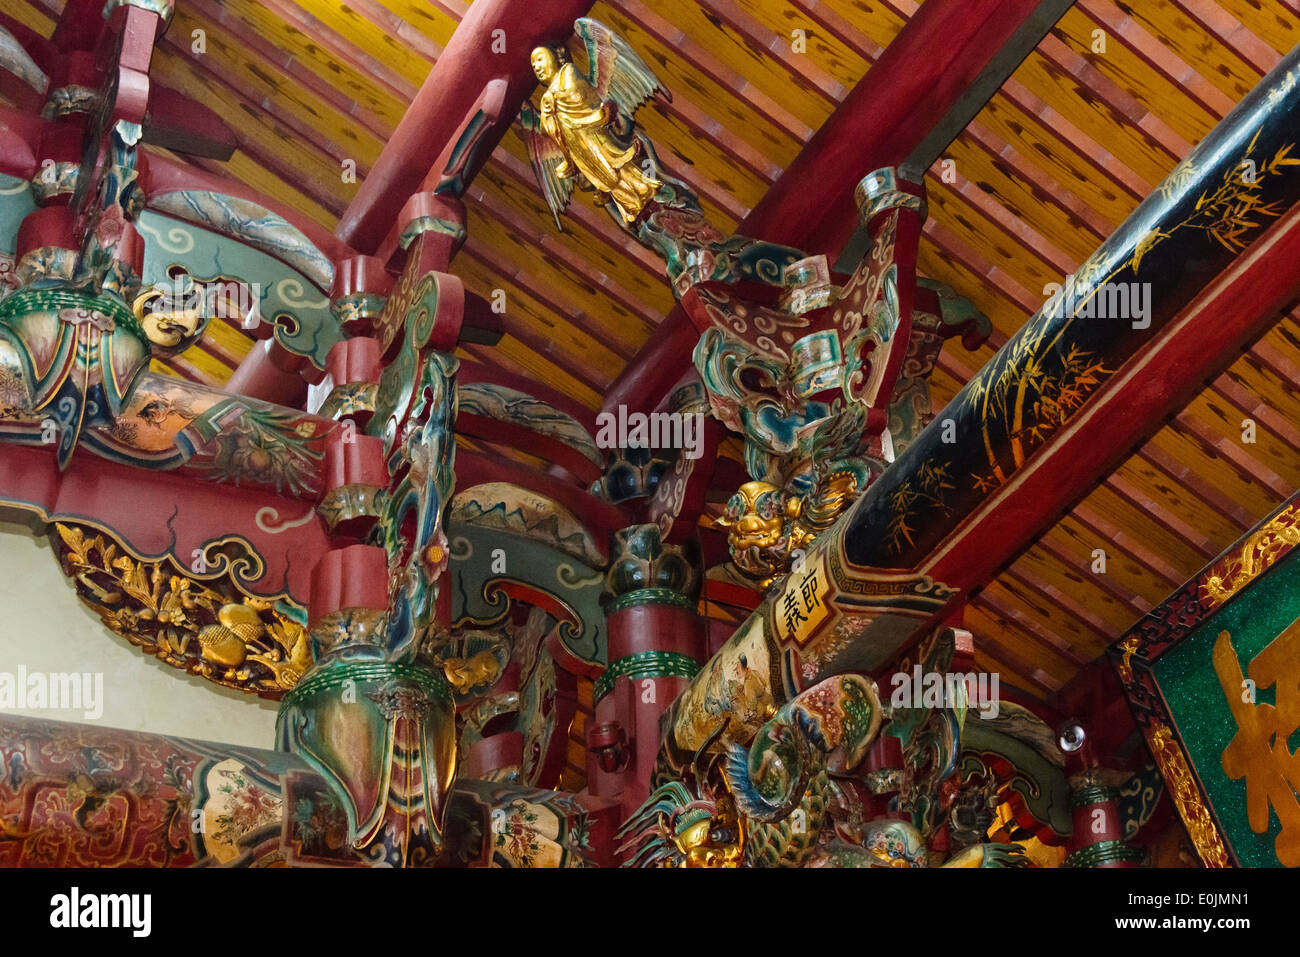 Dettagli architettonici in Guan Di tempio, Hsinchu, Taiwan Foto Stock